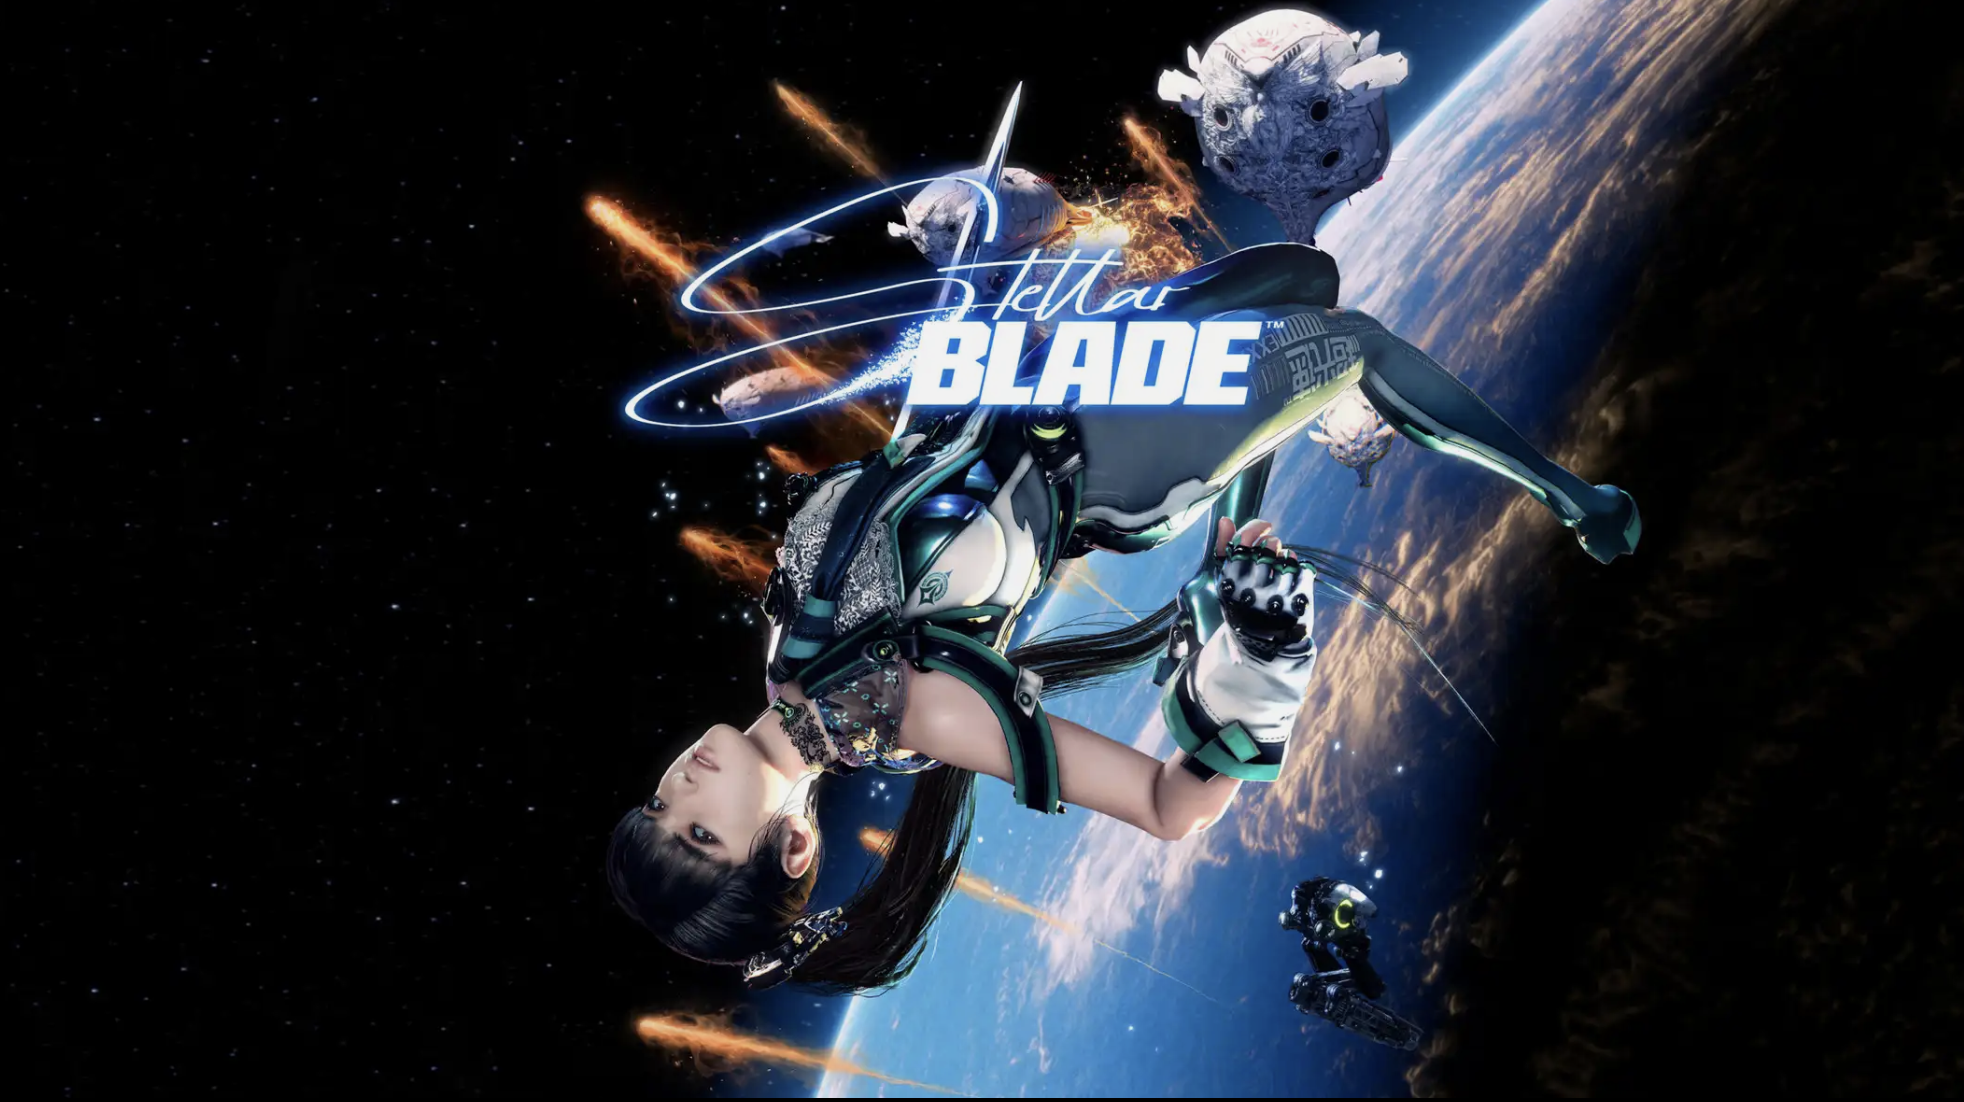 Stellar Blade State of Play